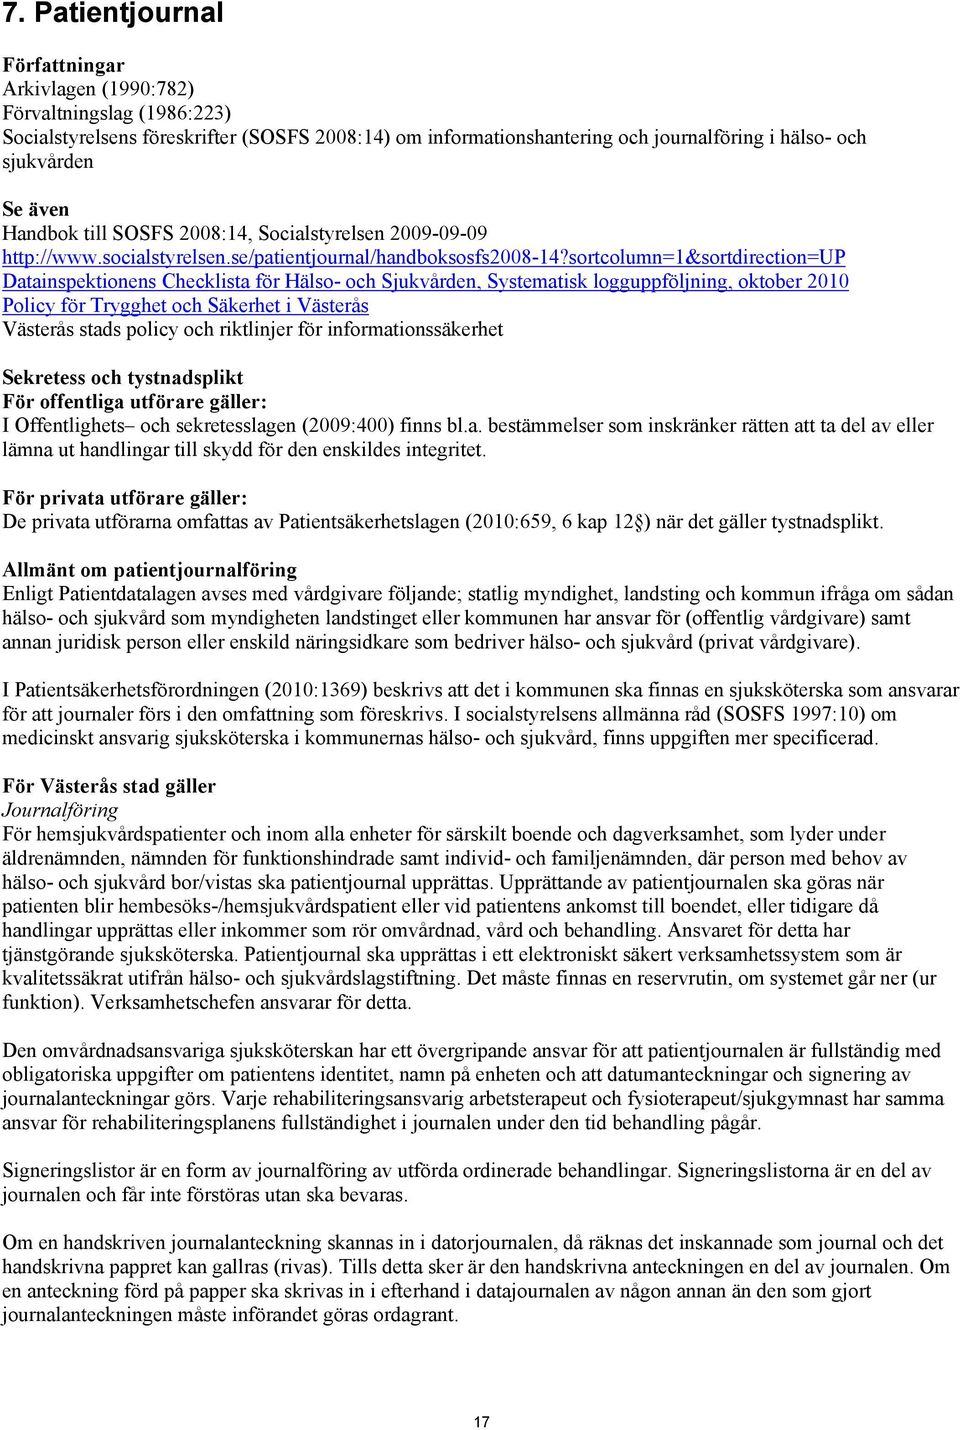 sortcolumn=1&sortdirection=up Datainspektionens Checklista för Hälso- och Sjukvården, Systematisk logguppföljning, oktober 2010 Policy för Trygghet och Säkerhet i Västerås Västerås stads policy och